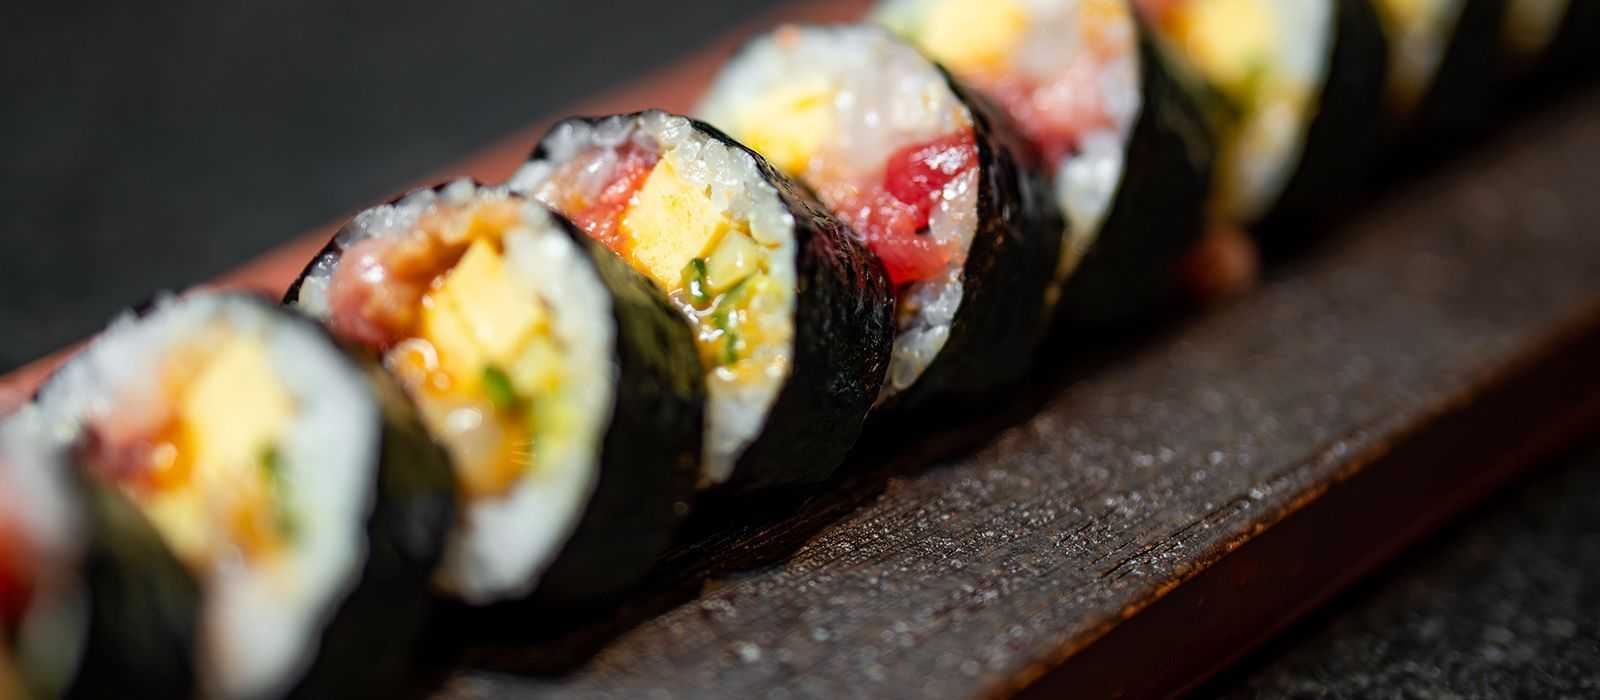 Premium Fotomaki by Chef Tom Jeon at Tozen Sushi Bar